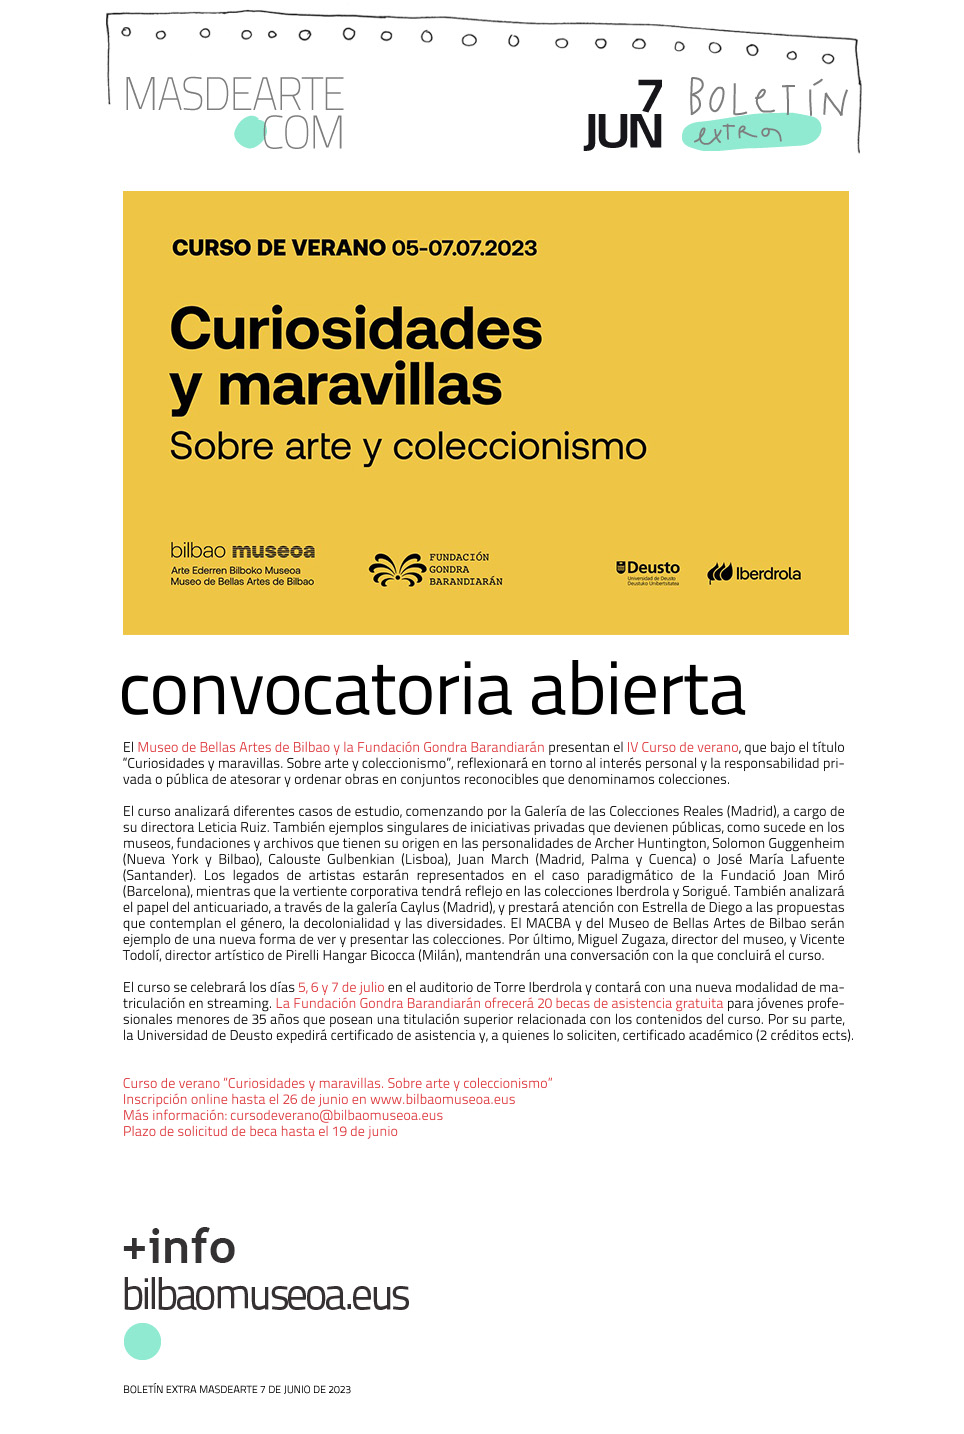 Curiosidades y maravillas. Sobre arte y coleccionismo. IV Curso de verano organizado por el Museo de Bellas Artes de Bilbao y la Fundación Gondra Barandiarán, del 5 al 7 de julio de 2023 